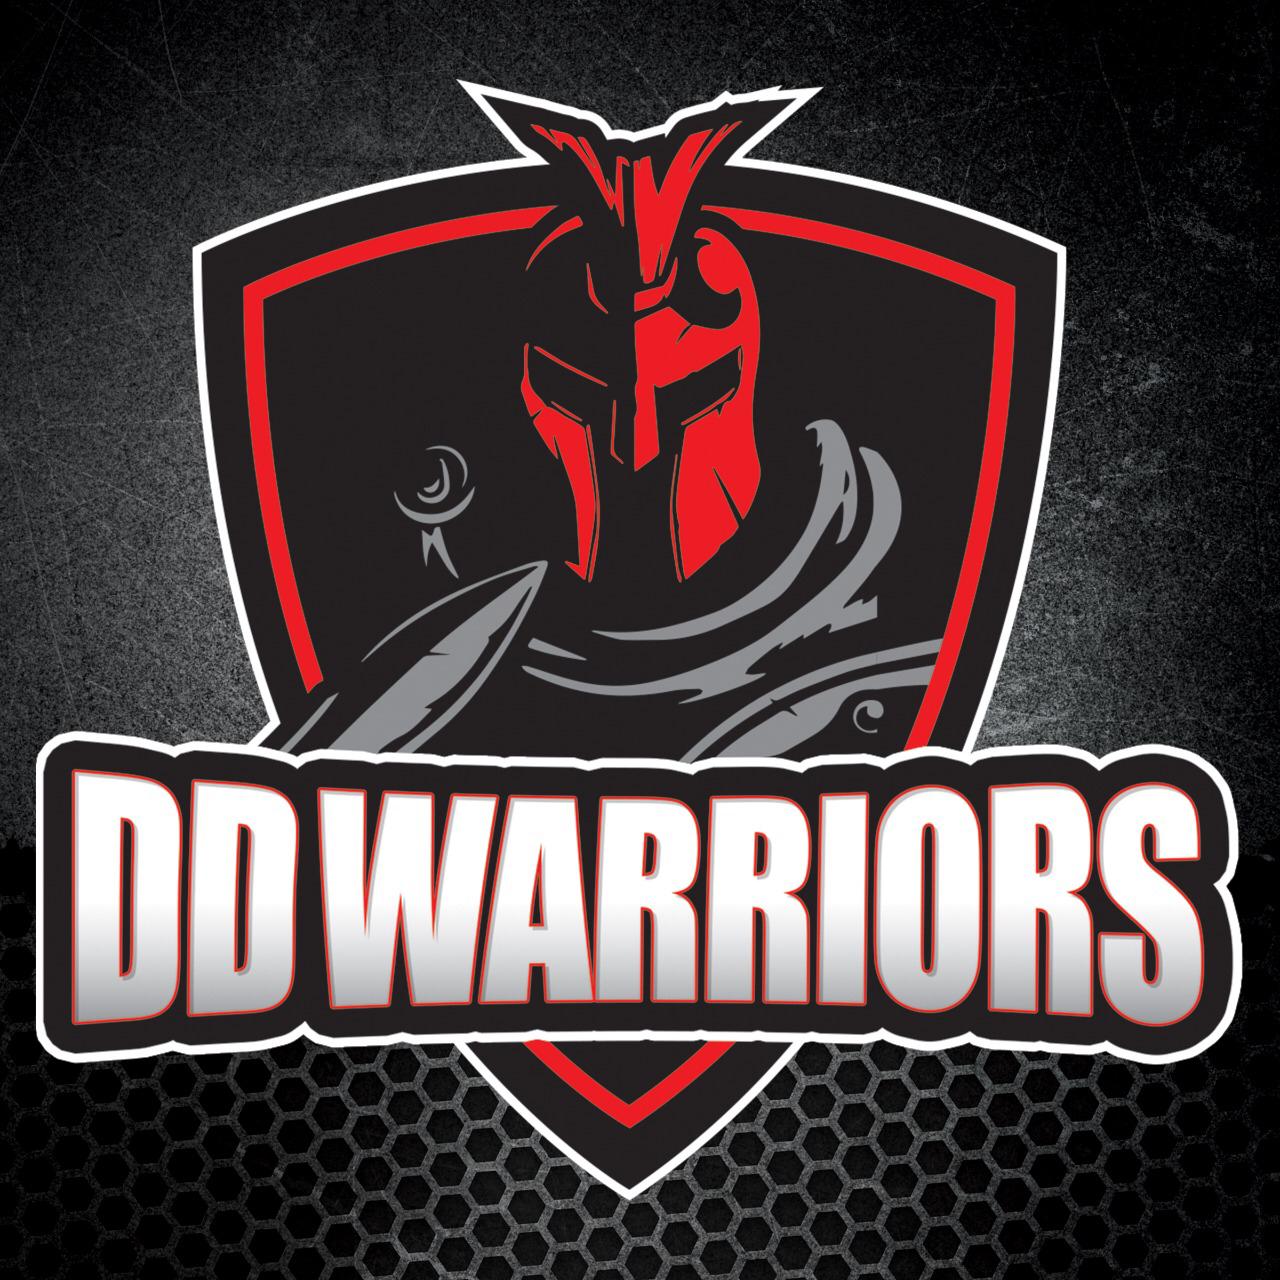 DD Warrior Tshirt - Outgears Fitness